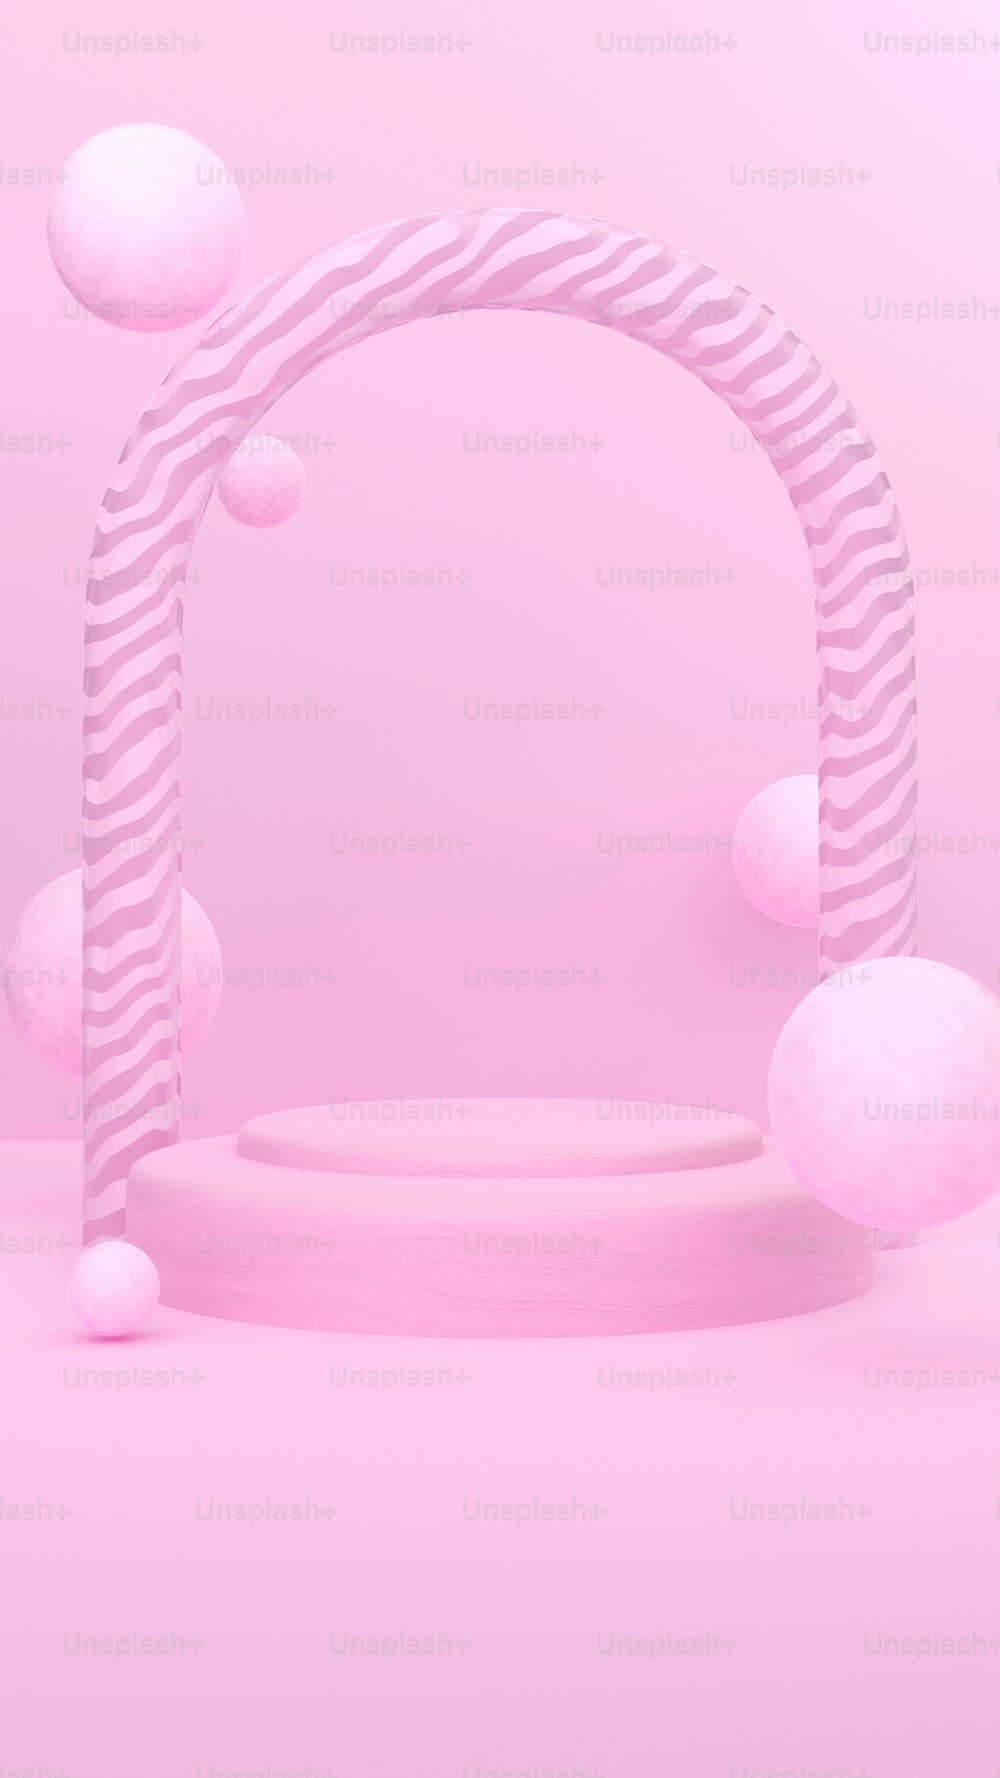 ein rosafarbener Hintergrund mit einem kreisförmigen Objekt in der Mitte